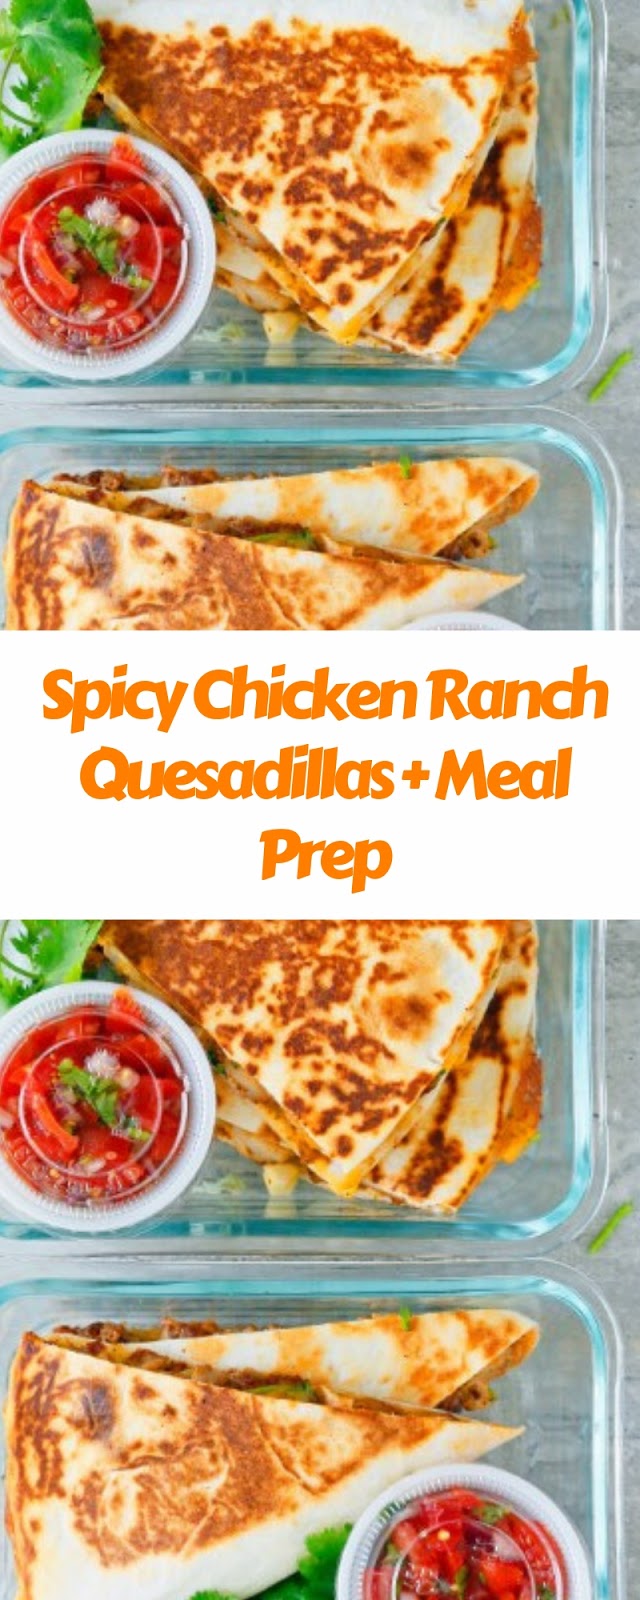 Spicy Chicken Ranch Quesadillas